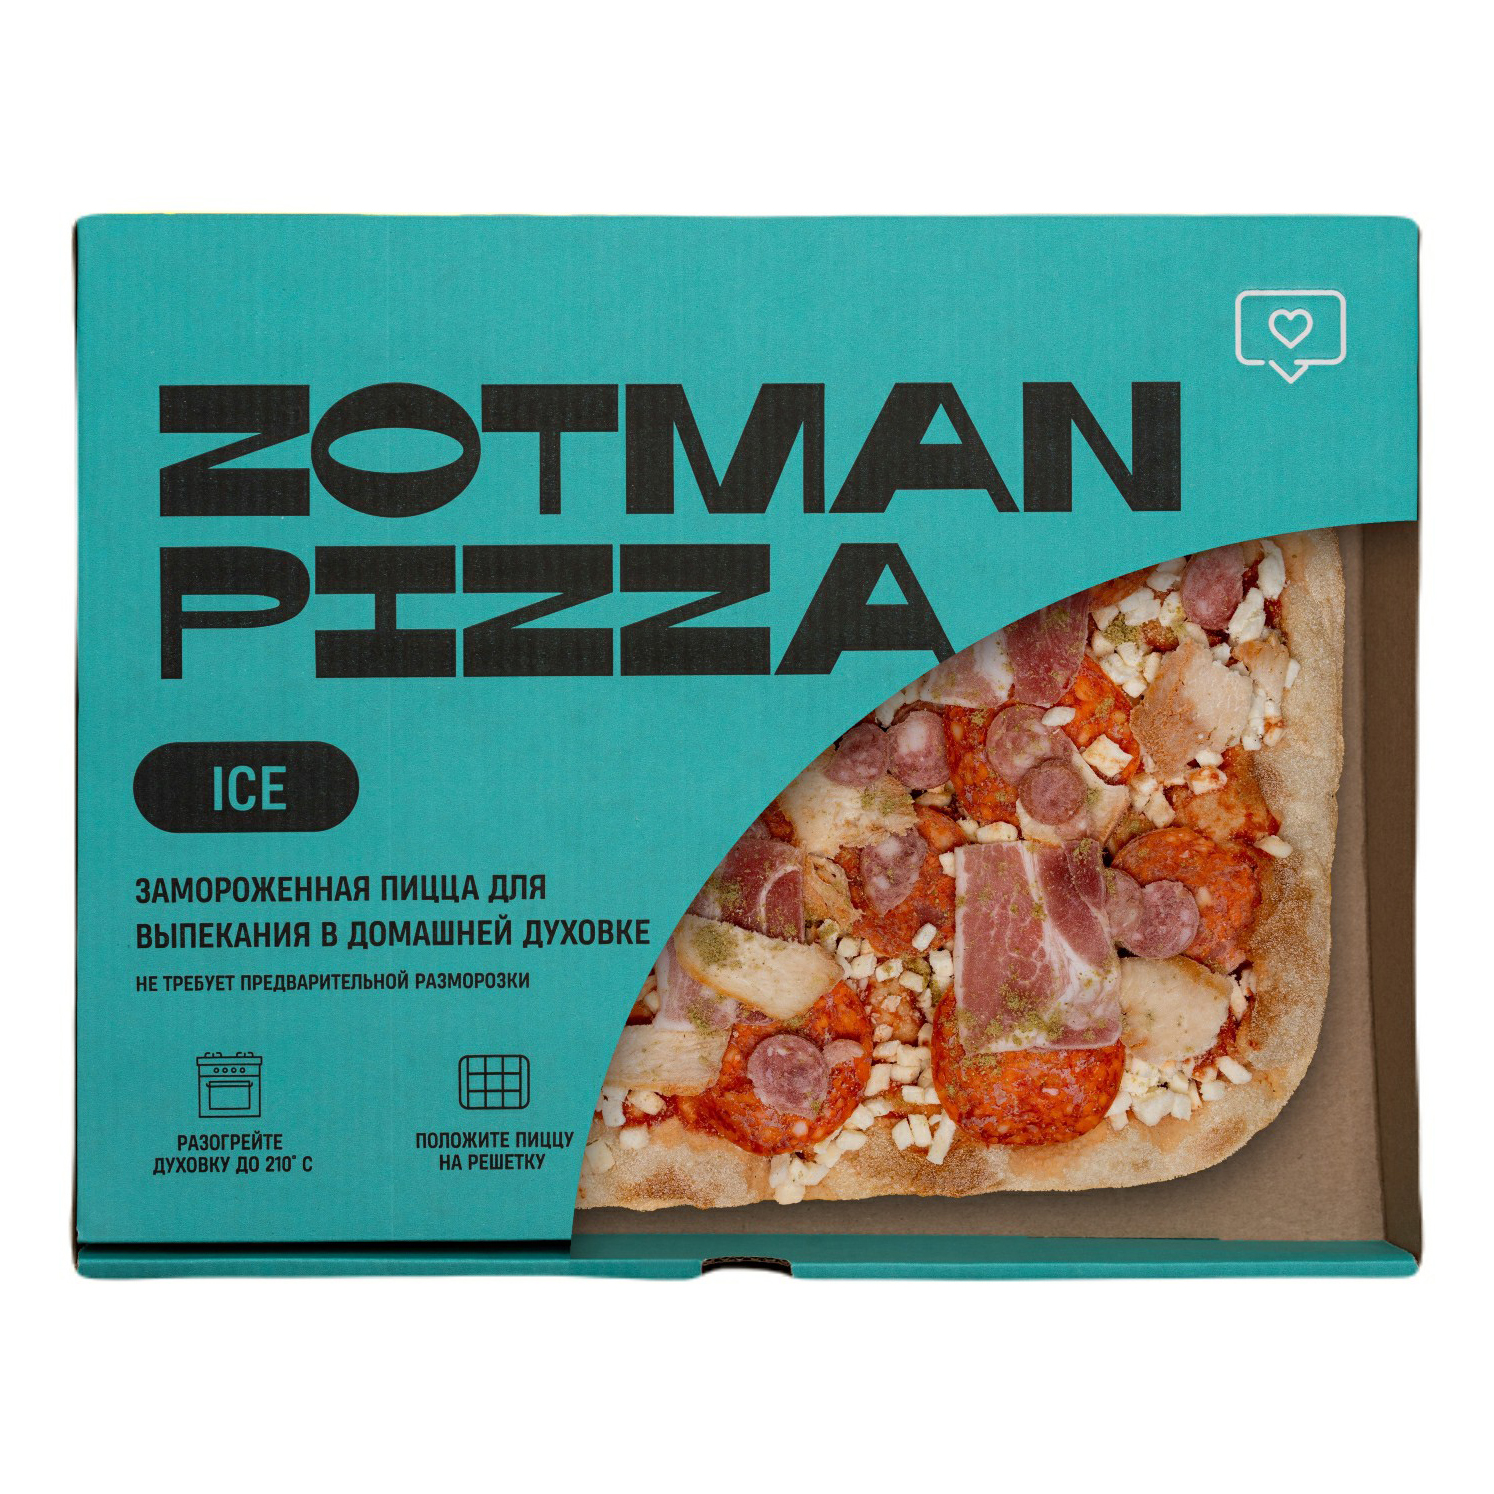 Замороженная пицца Рестория. Пицца Zotman замороженная. Замороженная пицца папа Наполи. Пицца замороженная отзывы. Zotman купить замороженная